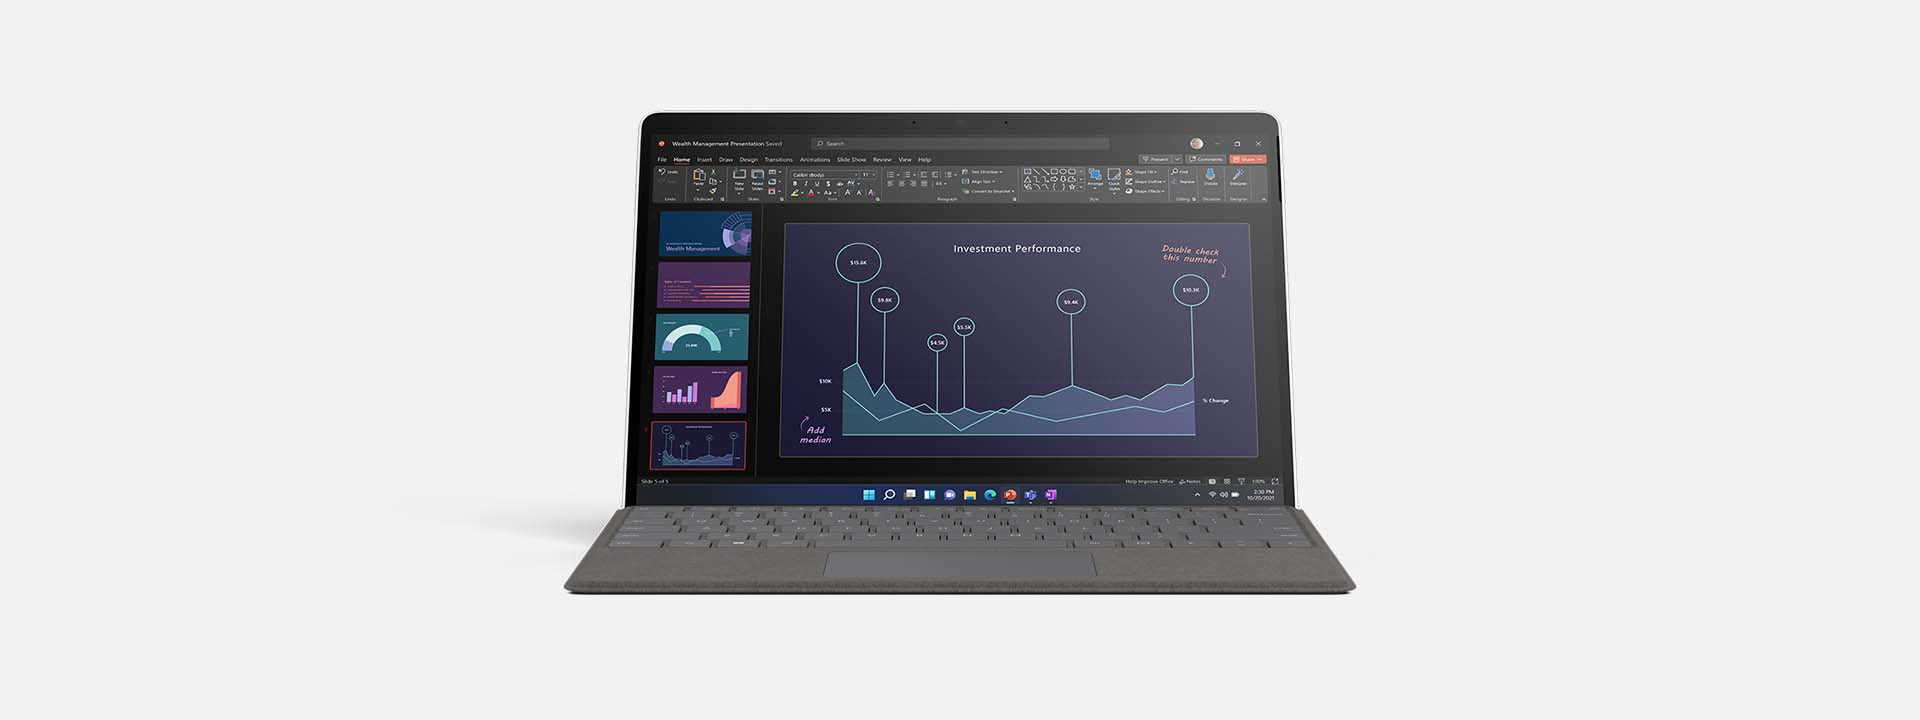 便携式计算机模式的 Surface Pro X 渲染图像